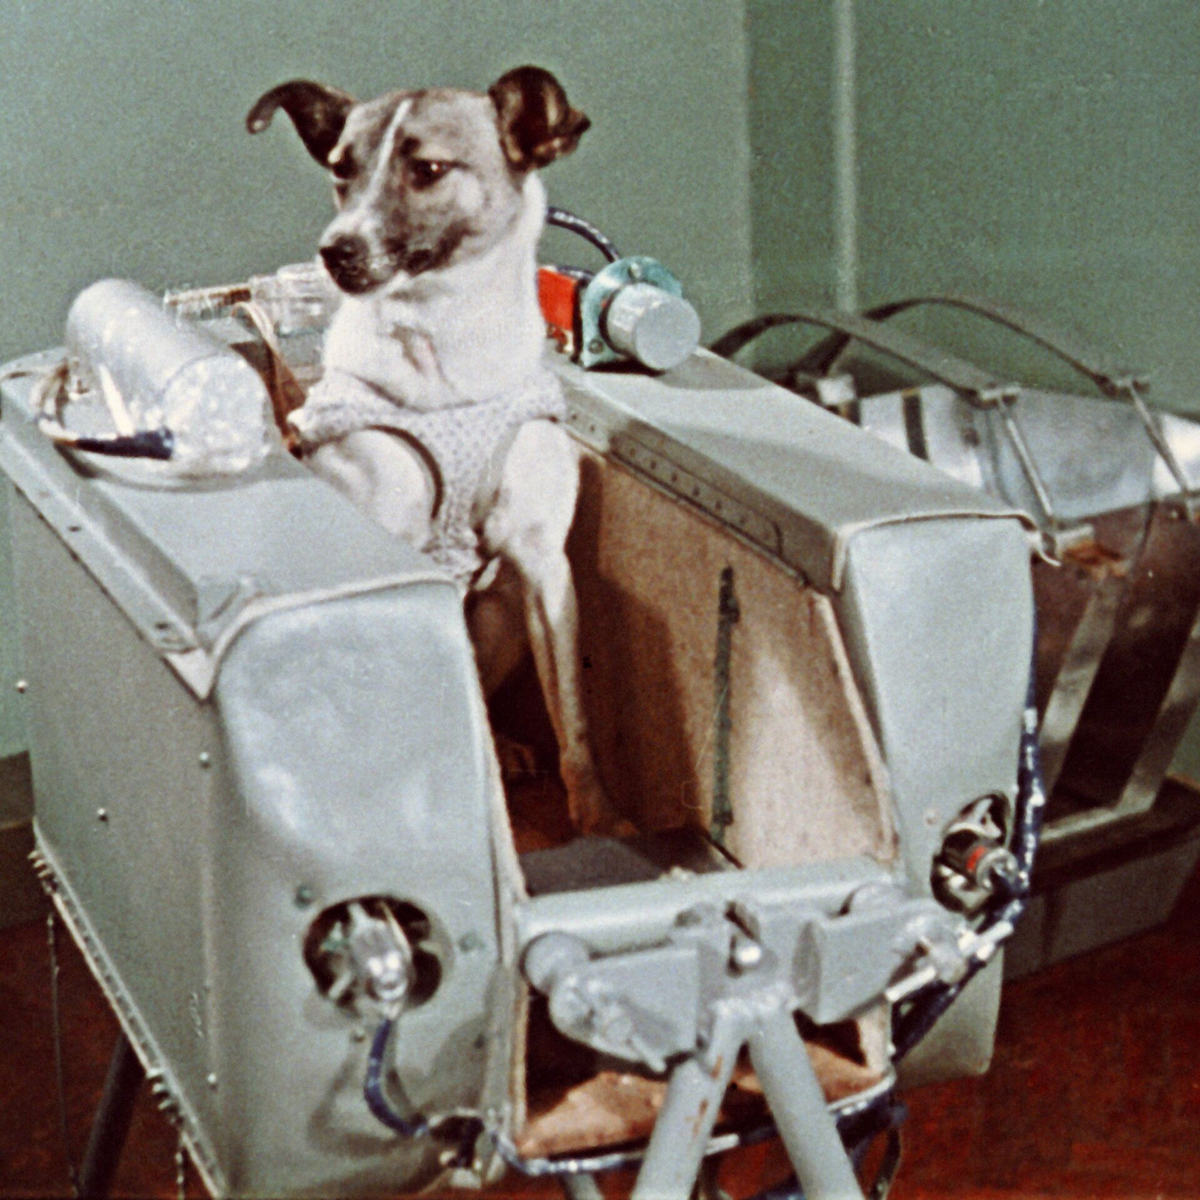 Первое живое существо полетевшее в космос. Собака лайка 1957. Первая собака космонавт лайка. Первая собака лайка в 1957 году была отправлена в космос. Спутник-2 с собакой лайкой на борту.